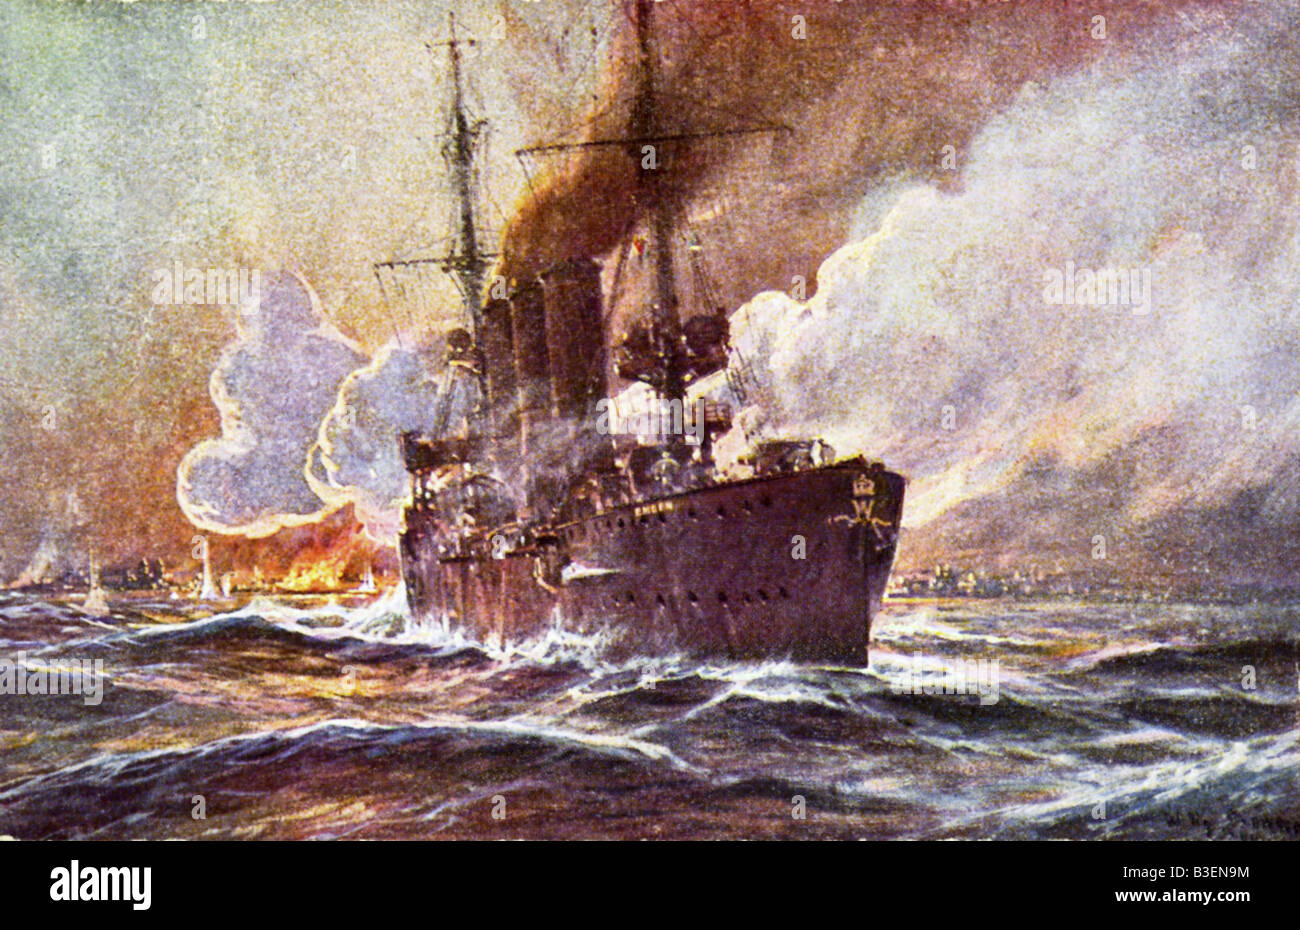 Événements, première Guerre mondiale / première Guerre mondiale, guerre navale, Madras est bombardé par le croiseur allemand SMS 'Emden', carte postale, après une peinture de Willy Stoewer (1864 - 1931), Allemagne, vers 1916, Banque D'Images